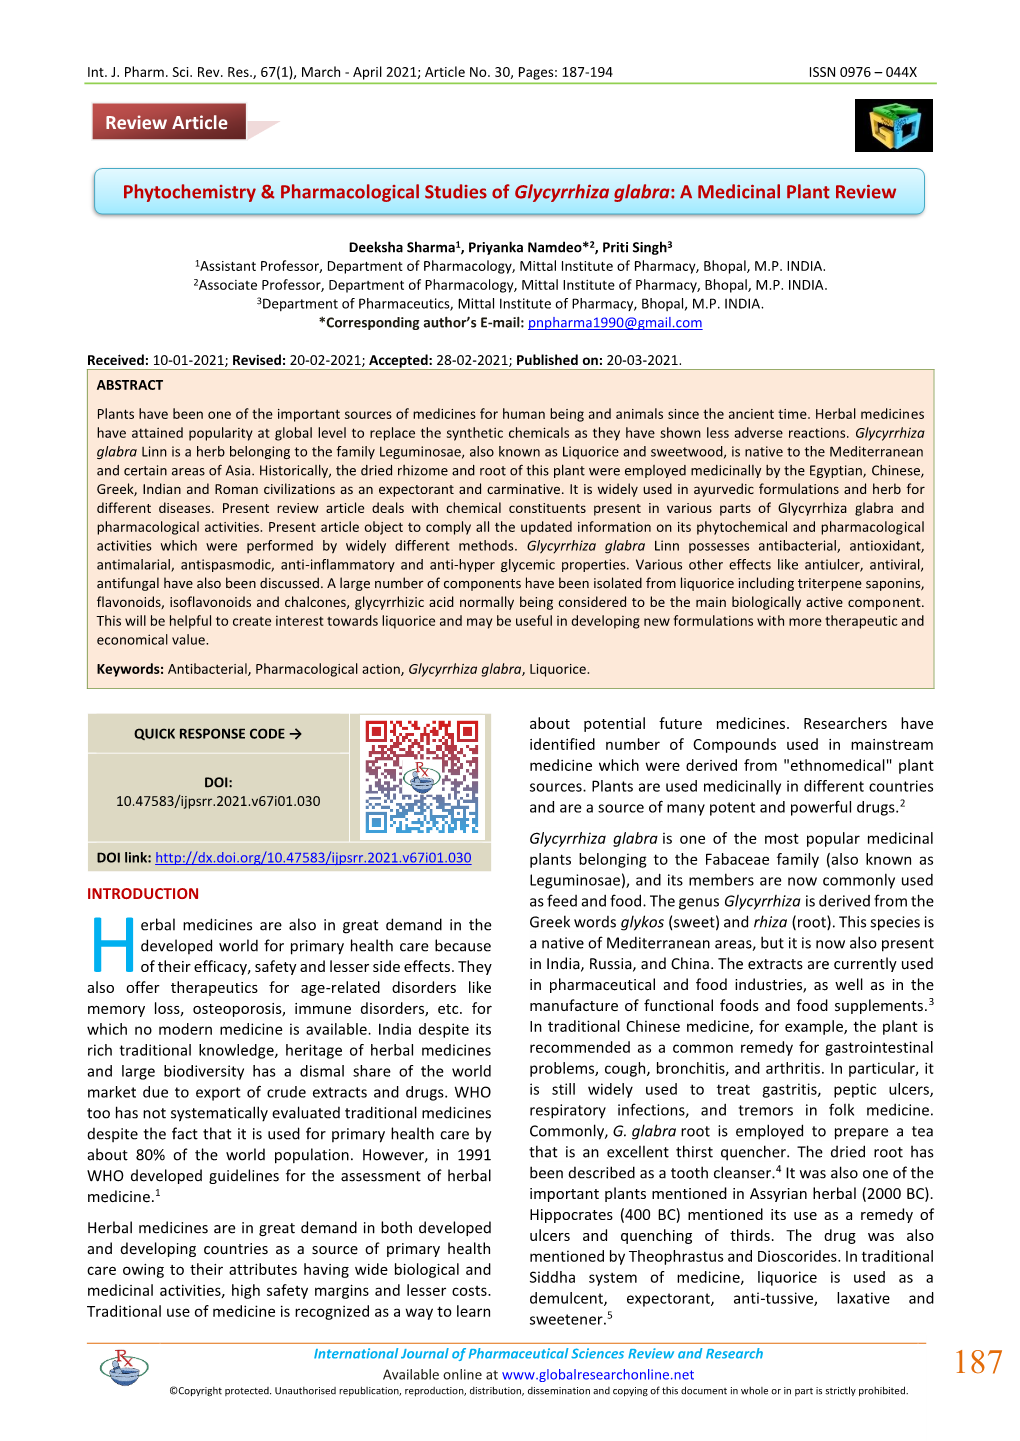 Phytochemistry & Pharmacological Studies of Glycyrrhiza Glabra